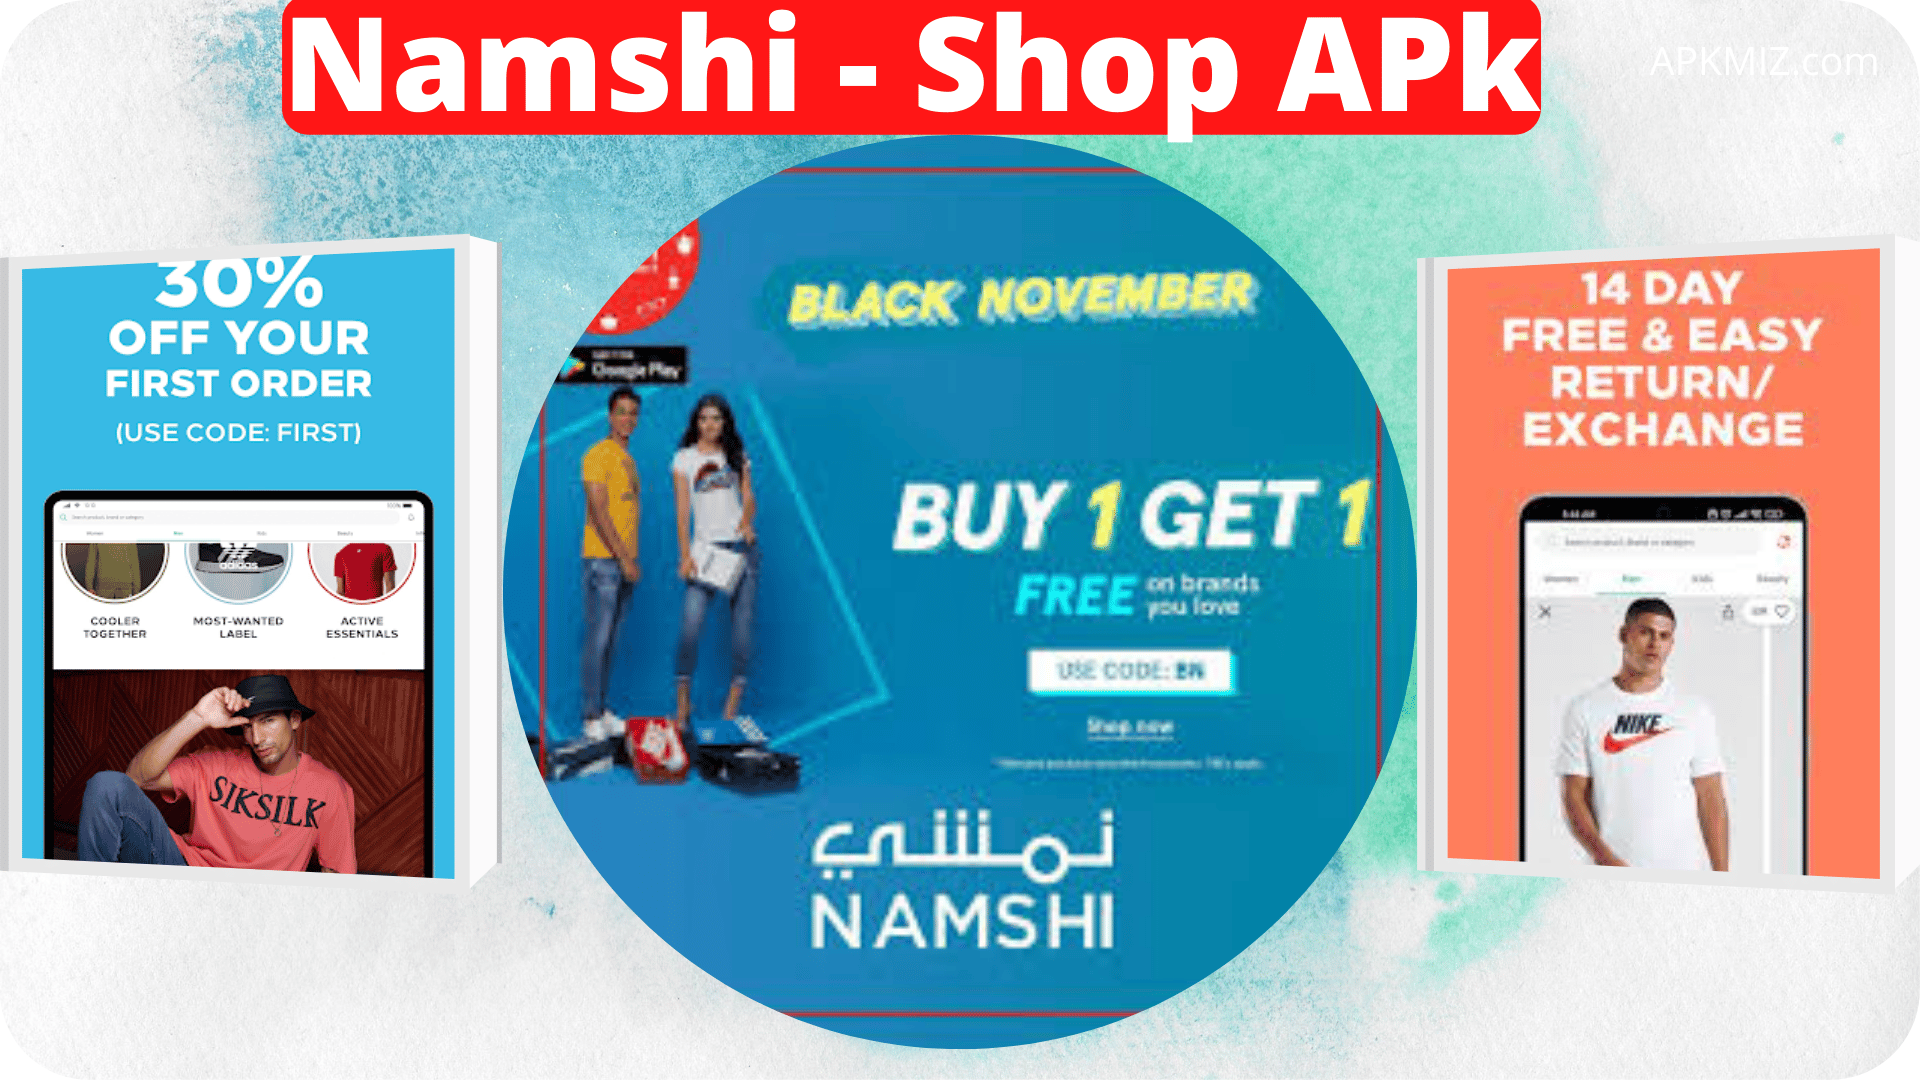 Namshi - Shop APk